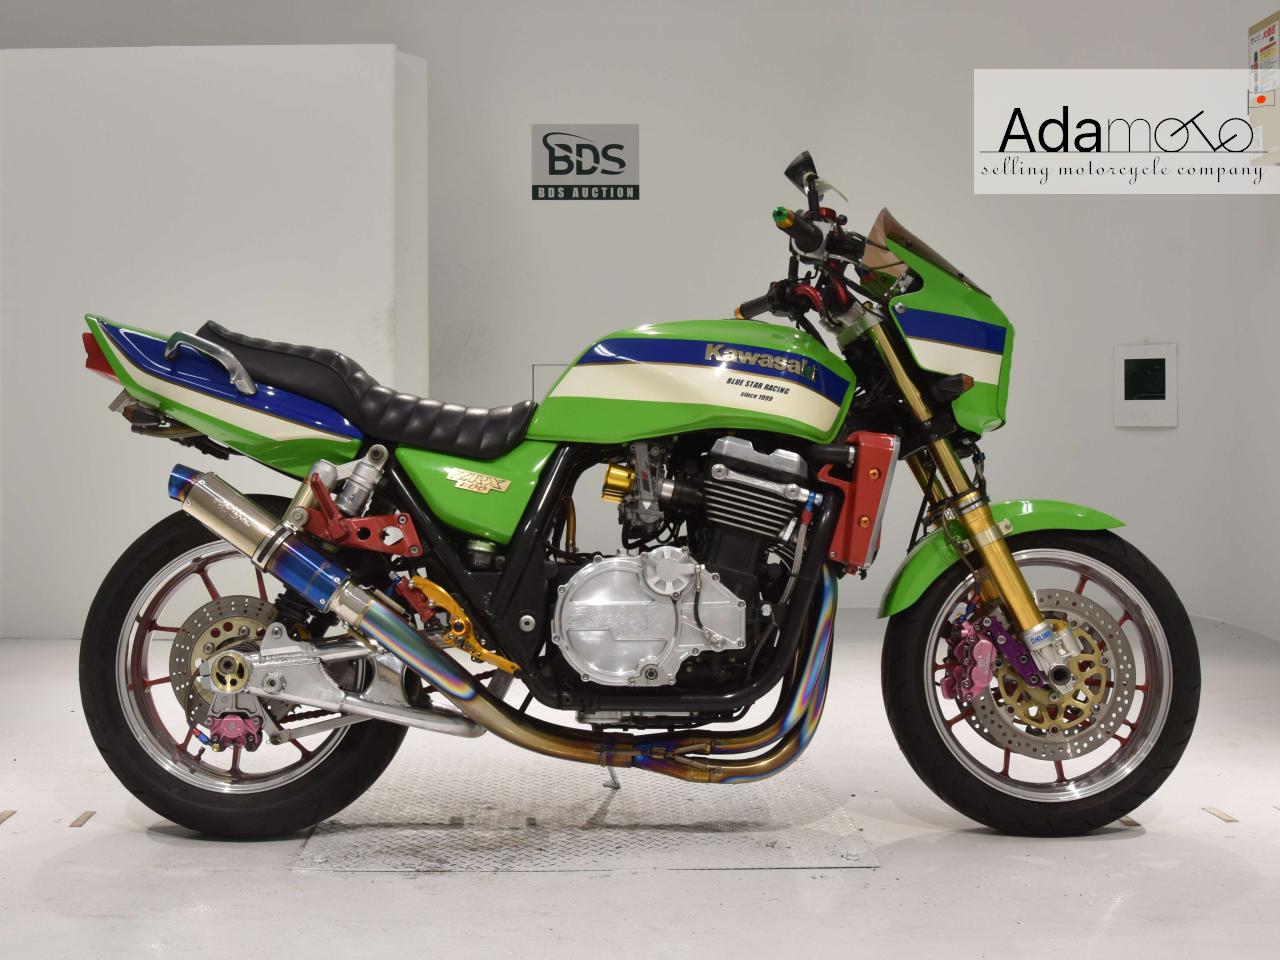 Kawasaki ZRX1100 - Adamoto - Motorcycles from Japan